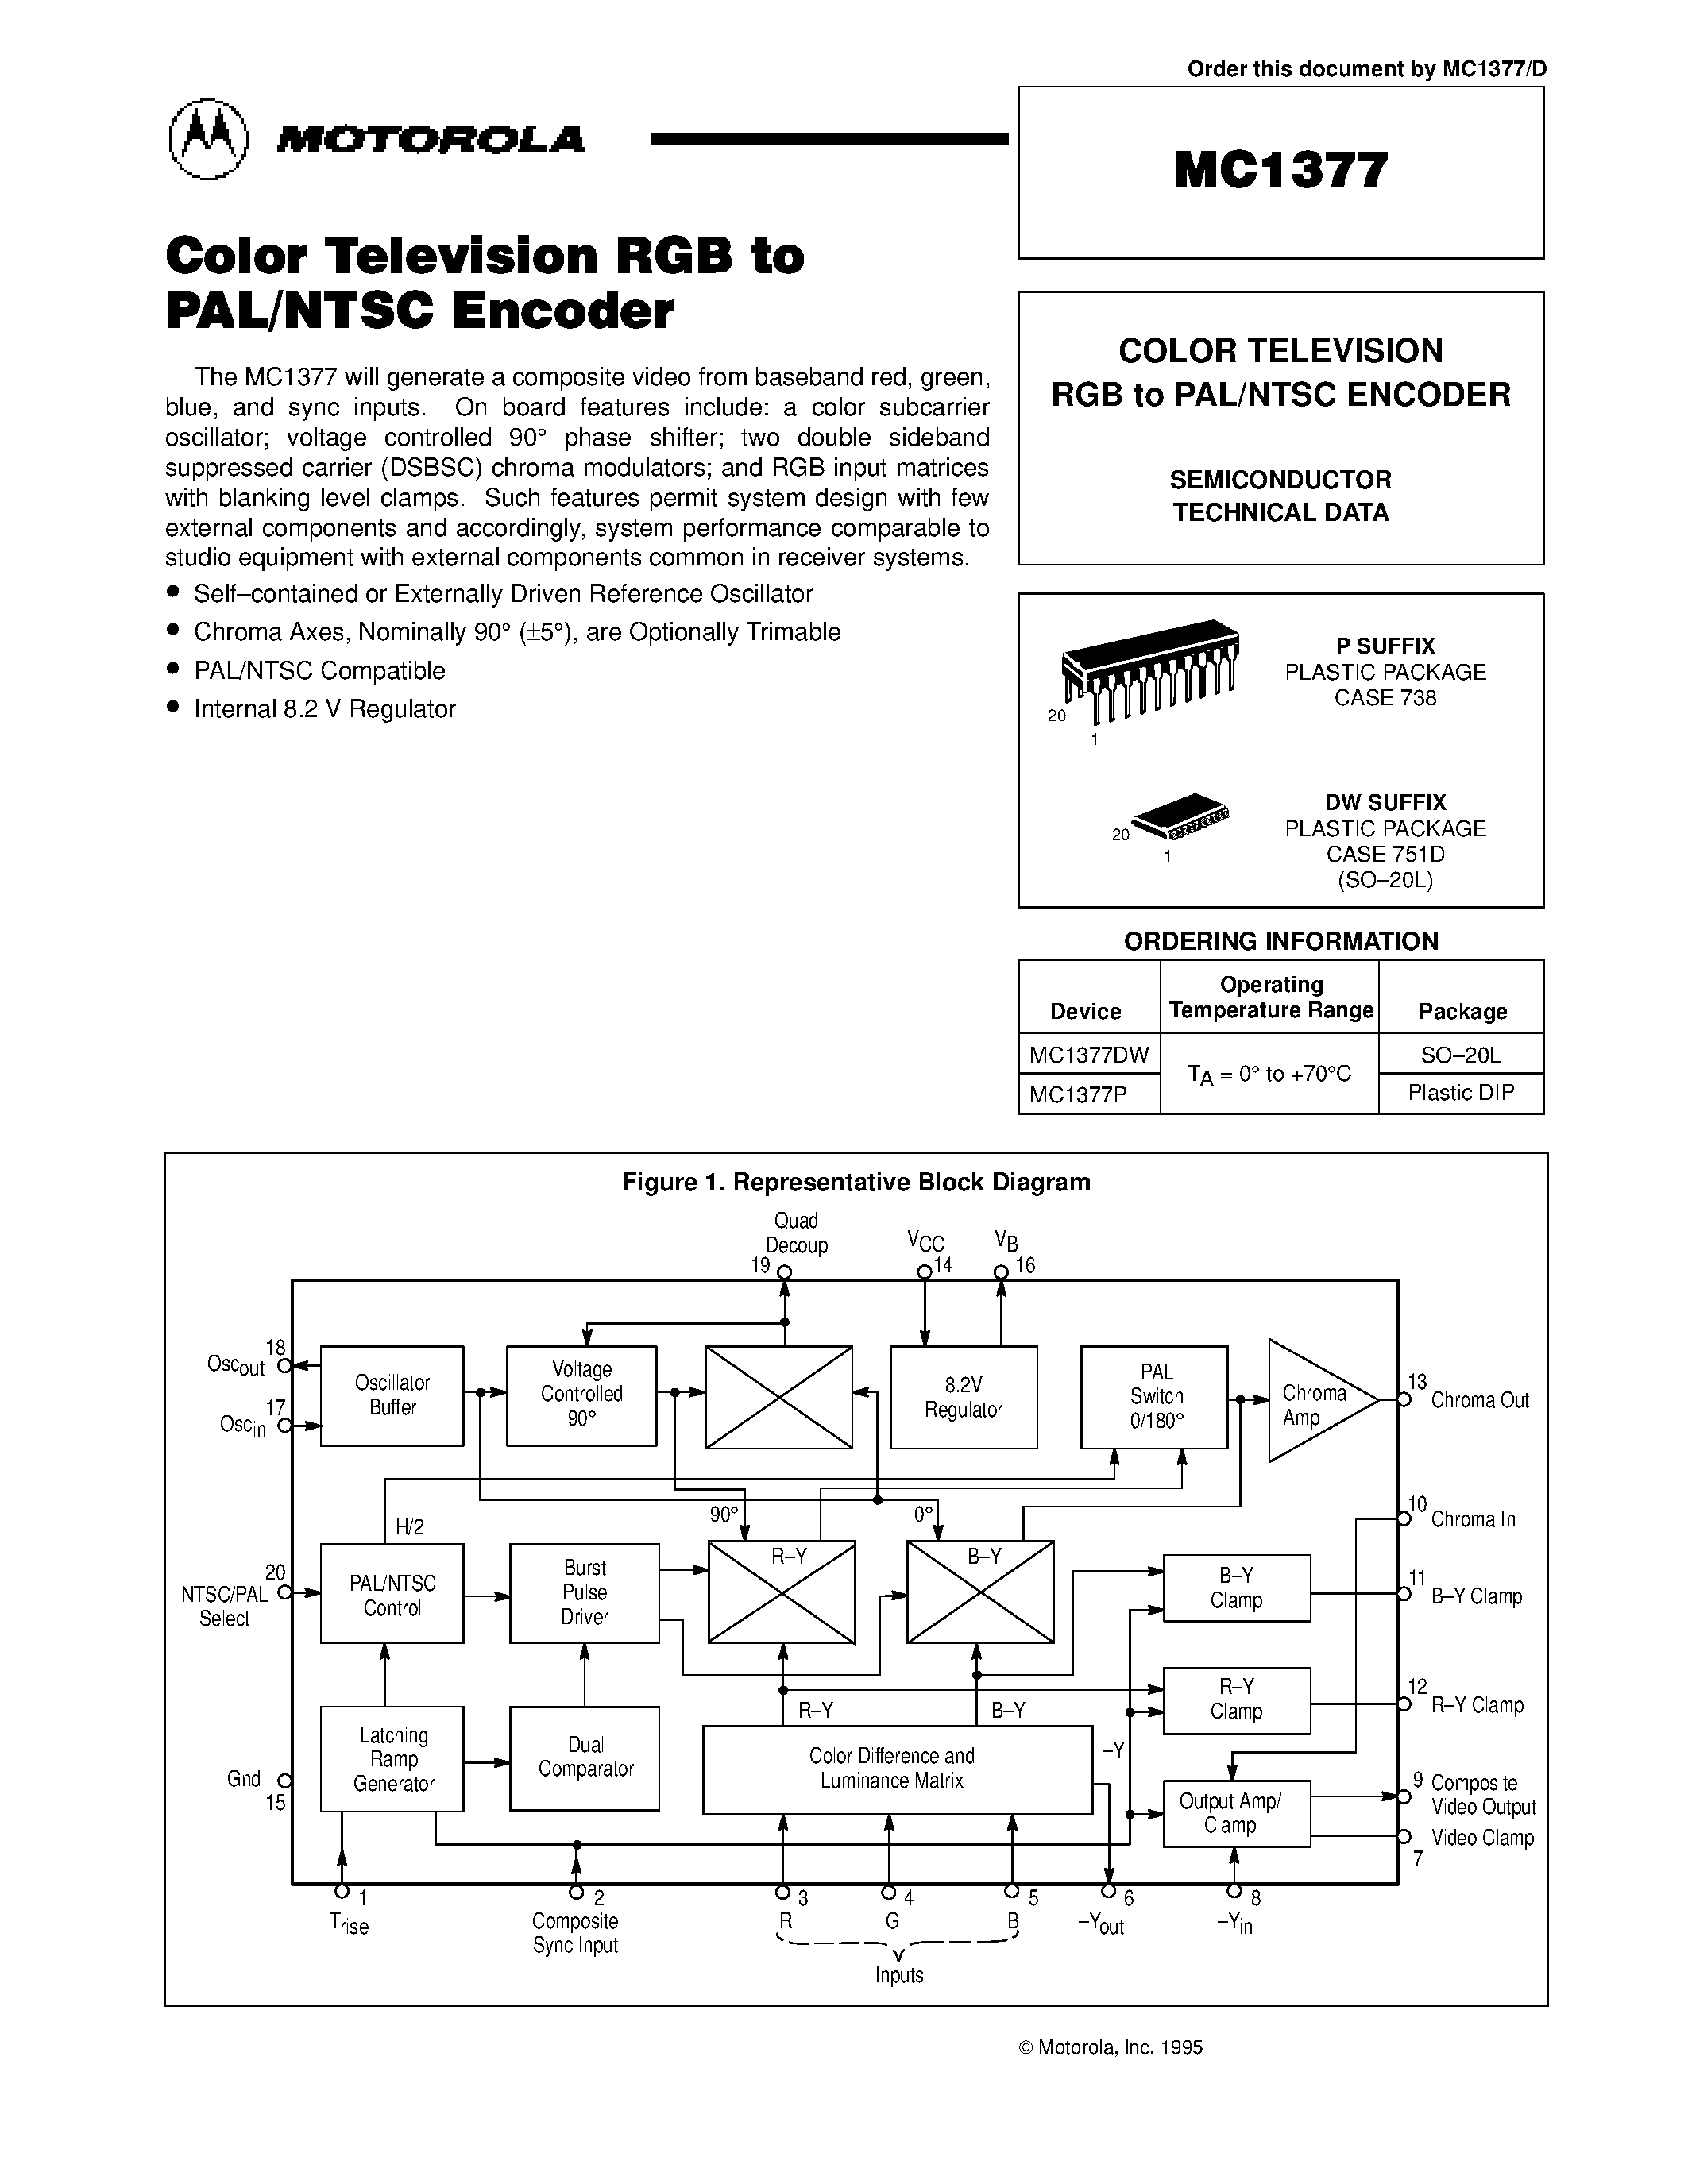 Даташит MC1377P - COLOR TELEVISION RGB to PAL/NTSC ENCODER страница 1